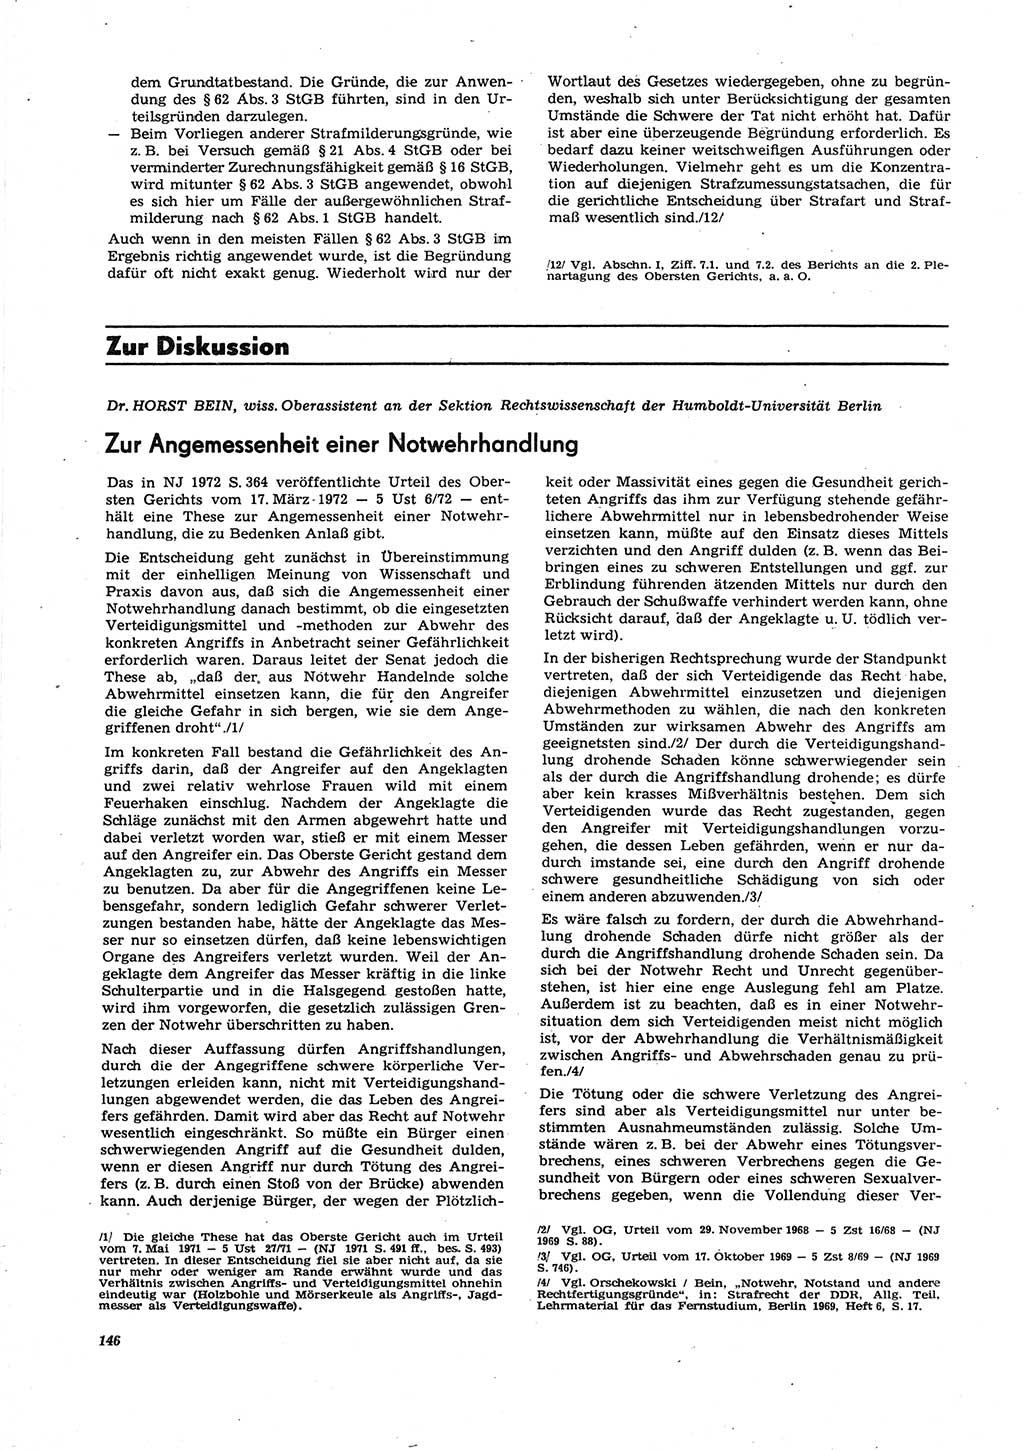 Neue Justiz (NJ), Zeitschrift für Recht und Rechtswissenschaft [Deutsche Demokratische Republik (DDR)], 27. Jahrgang 1973, Seite 146 (NJ DDR 1973, S. 146)